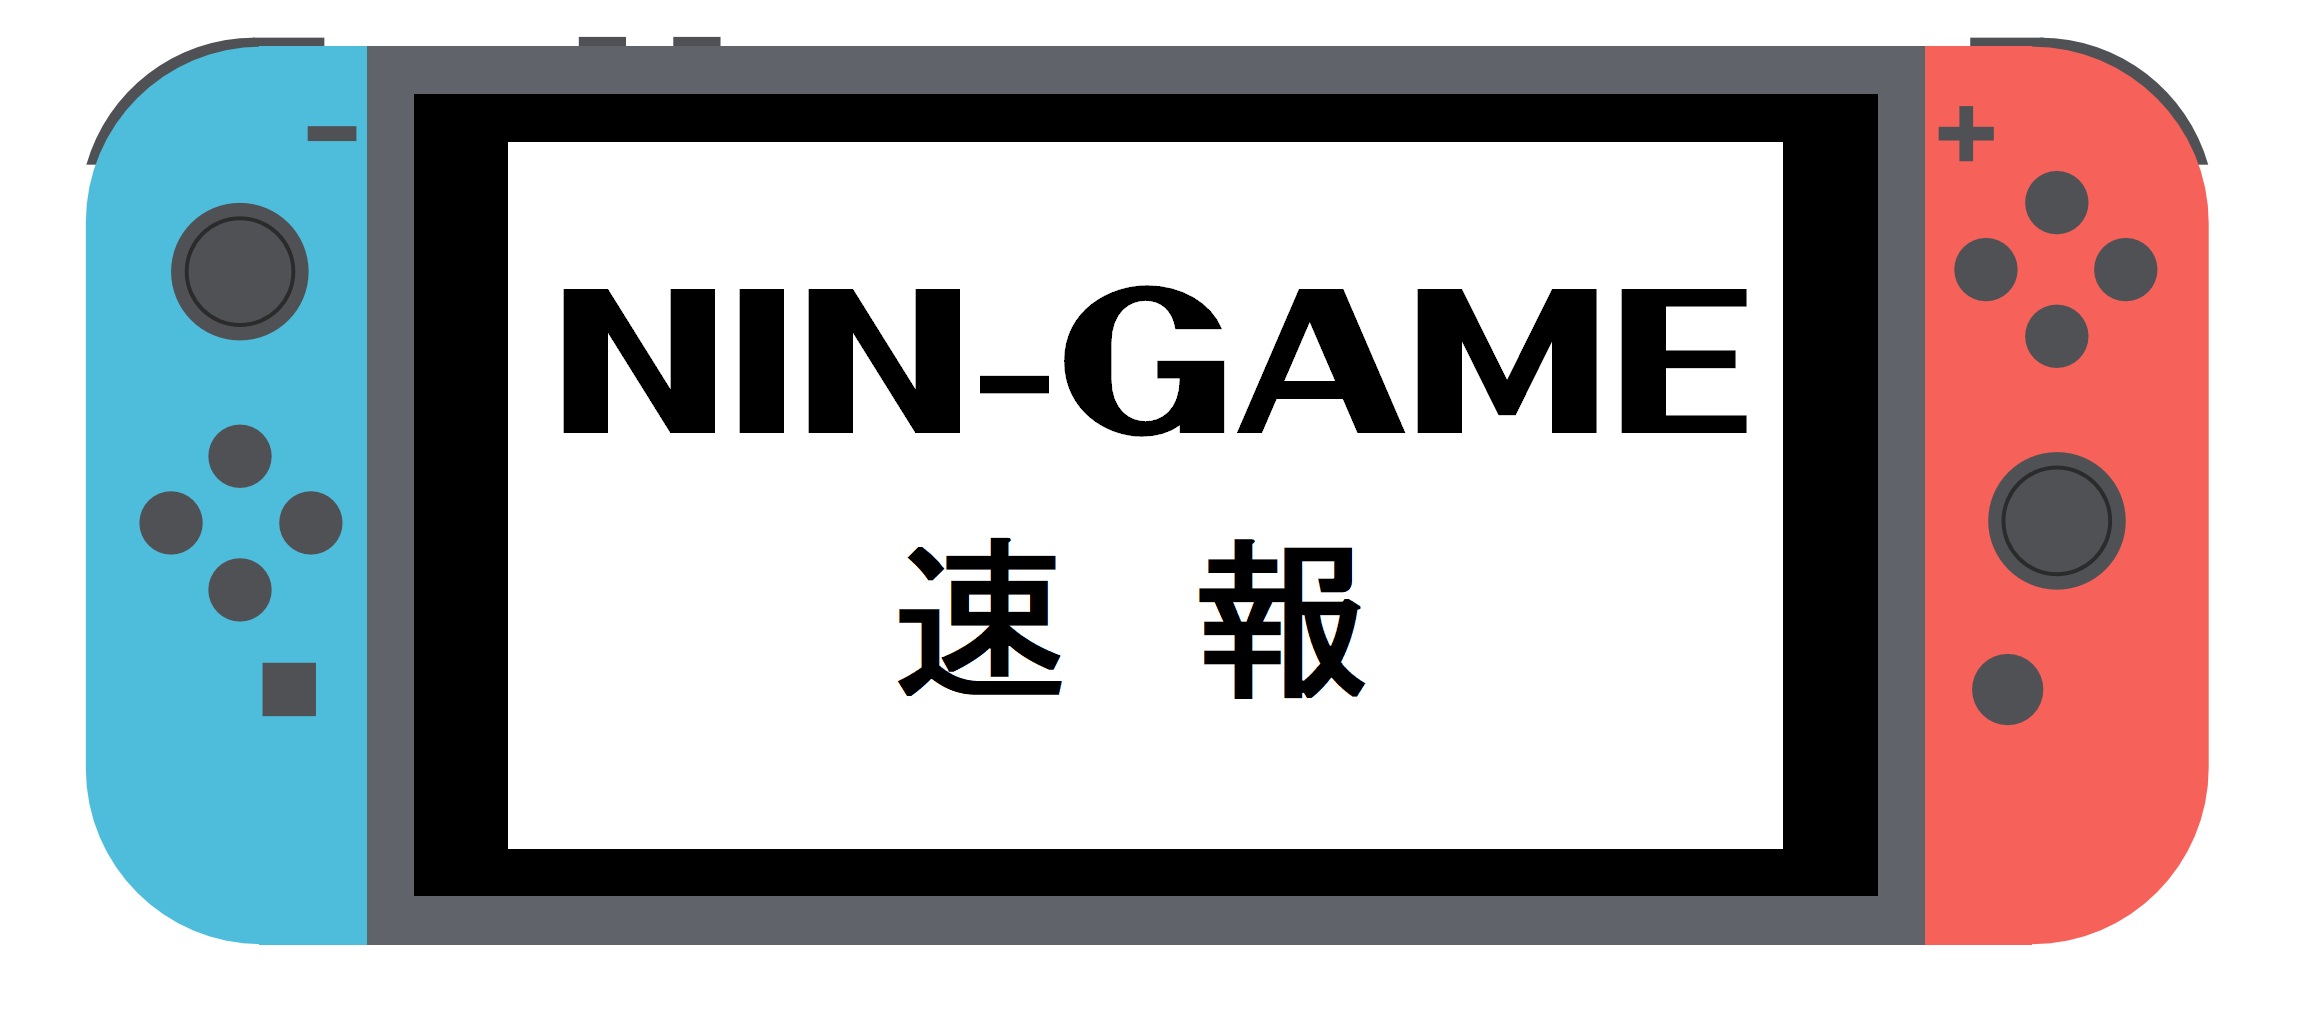 NIN-GAME速報